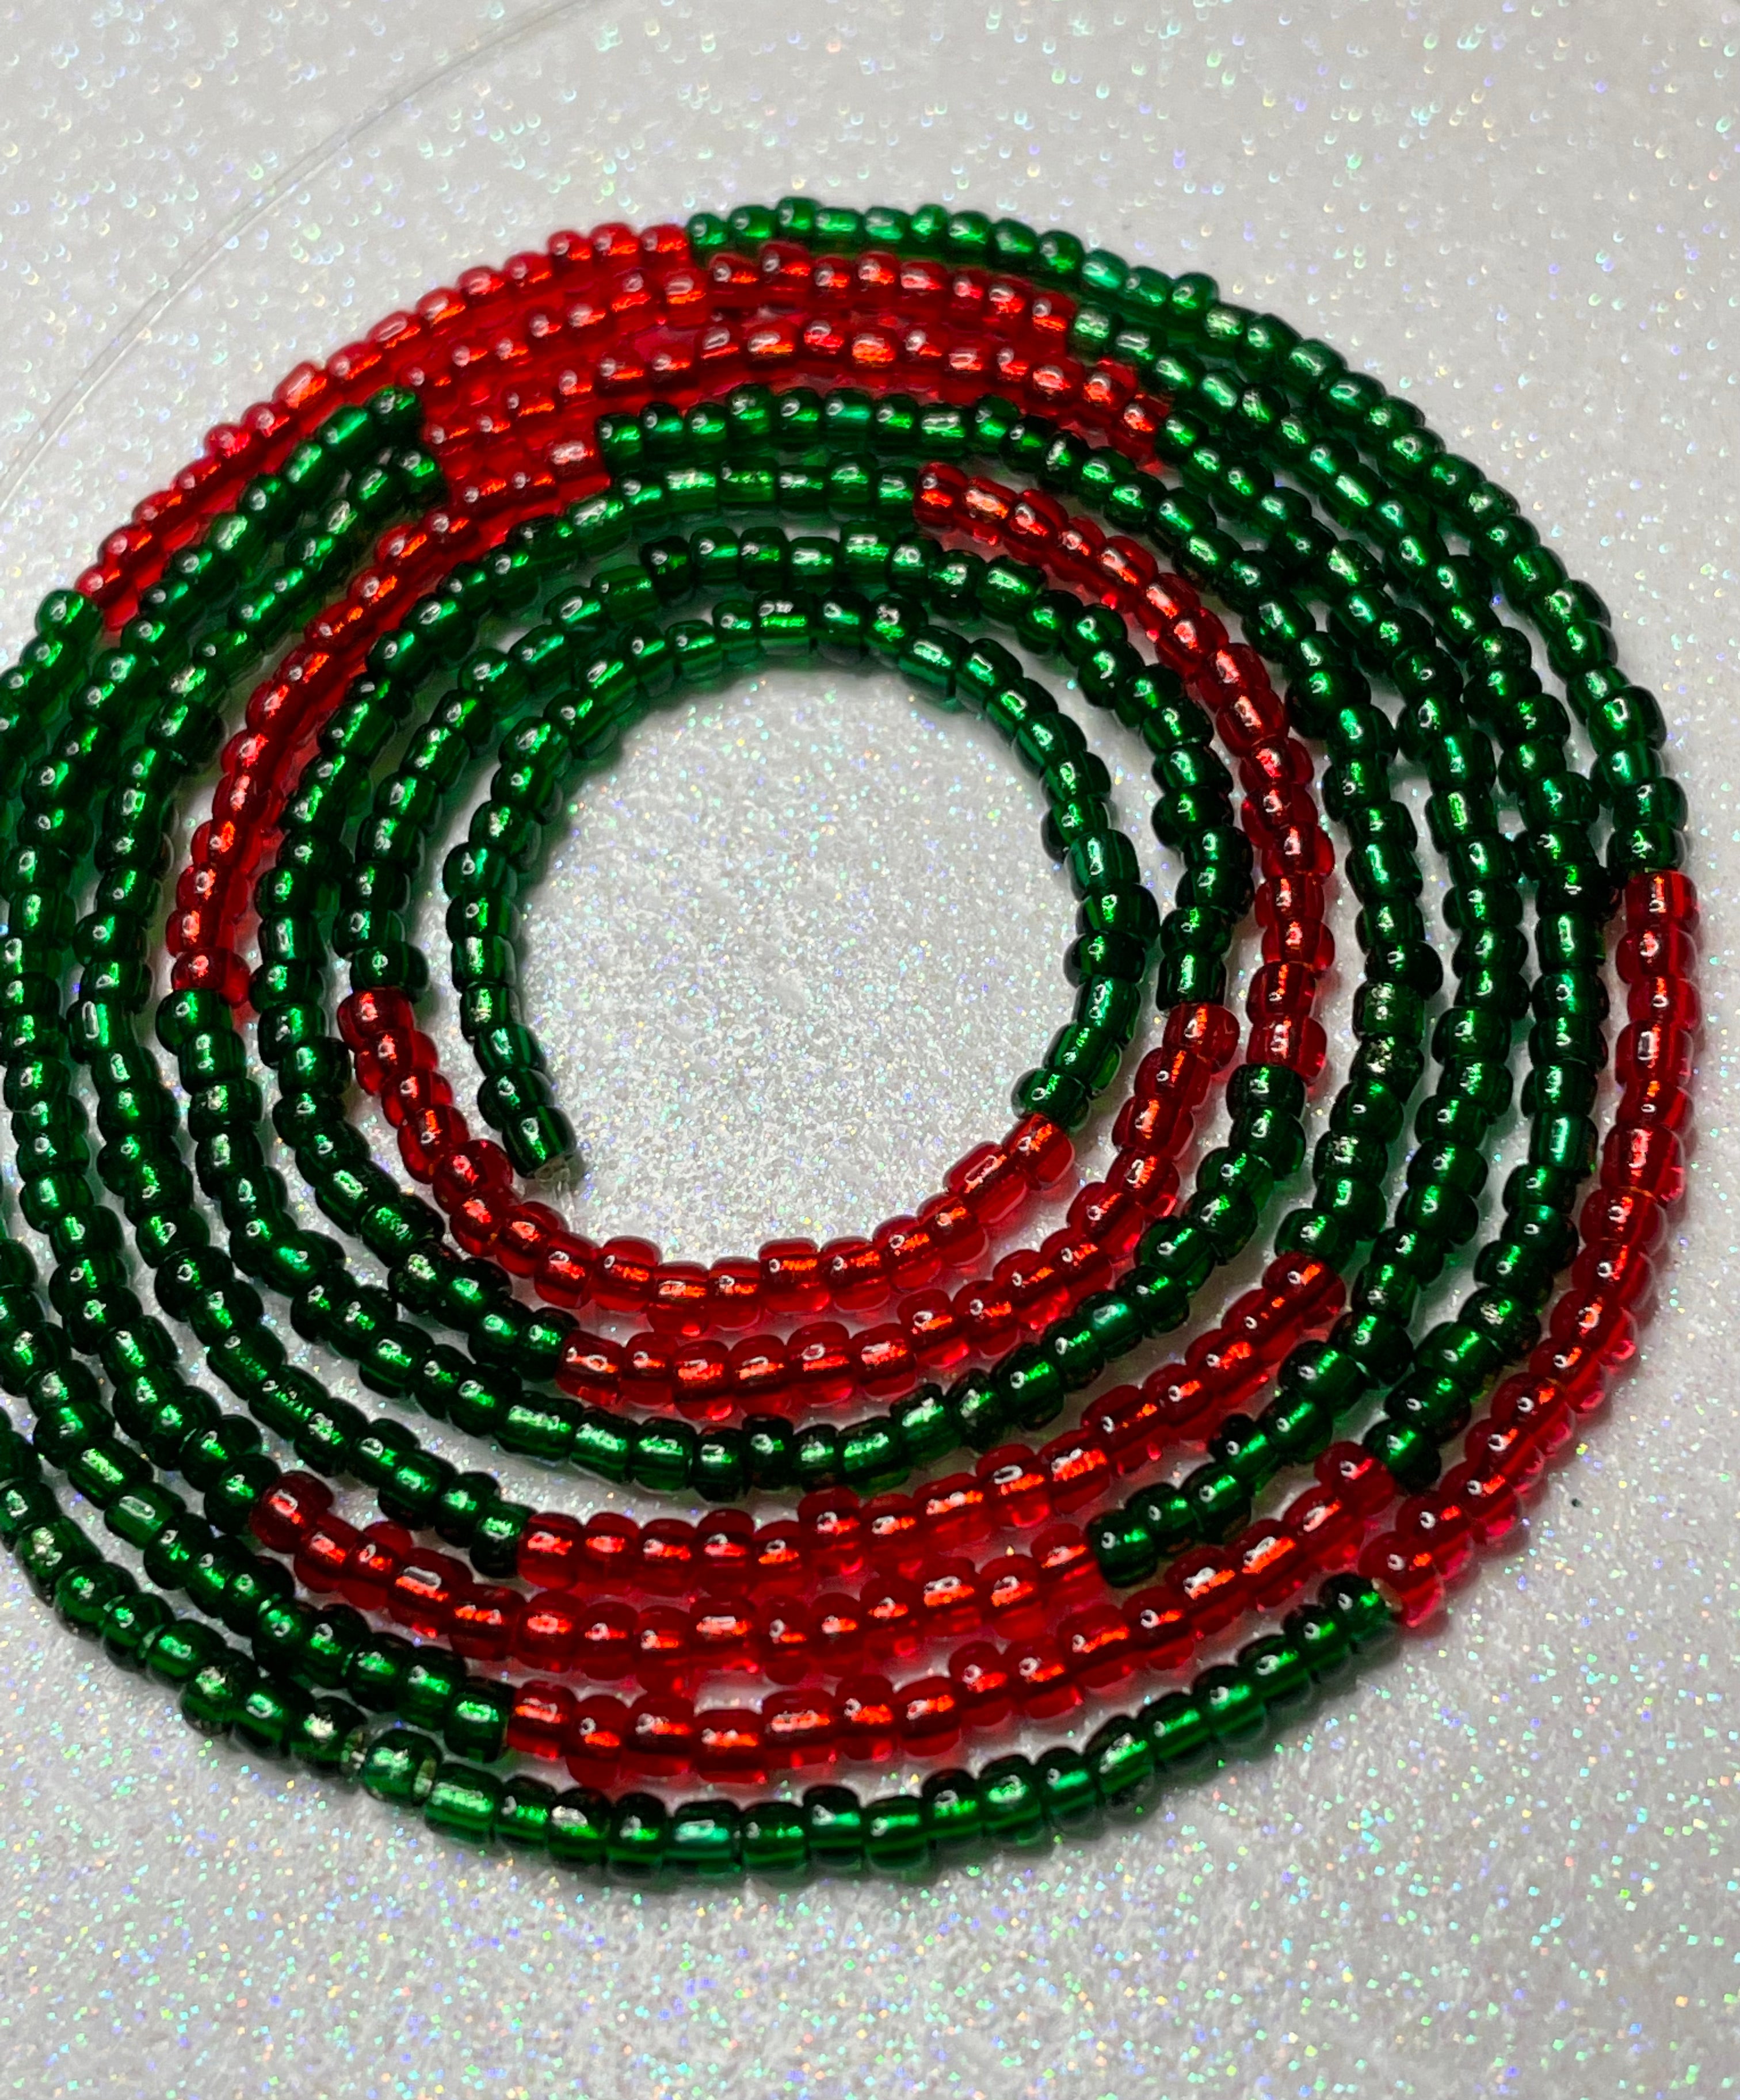 Bangladesh 🇧🇩 Waist Beads